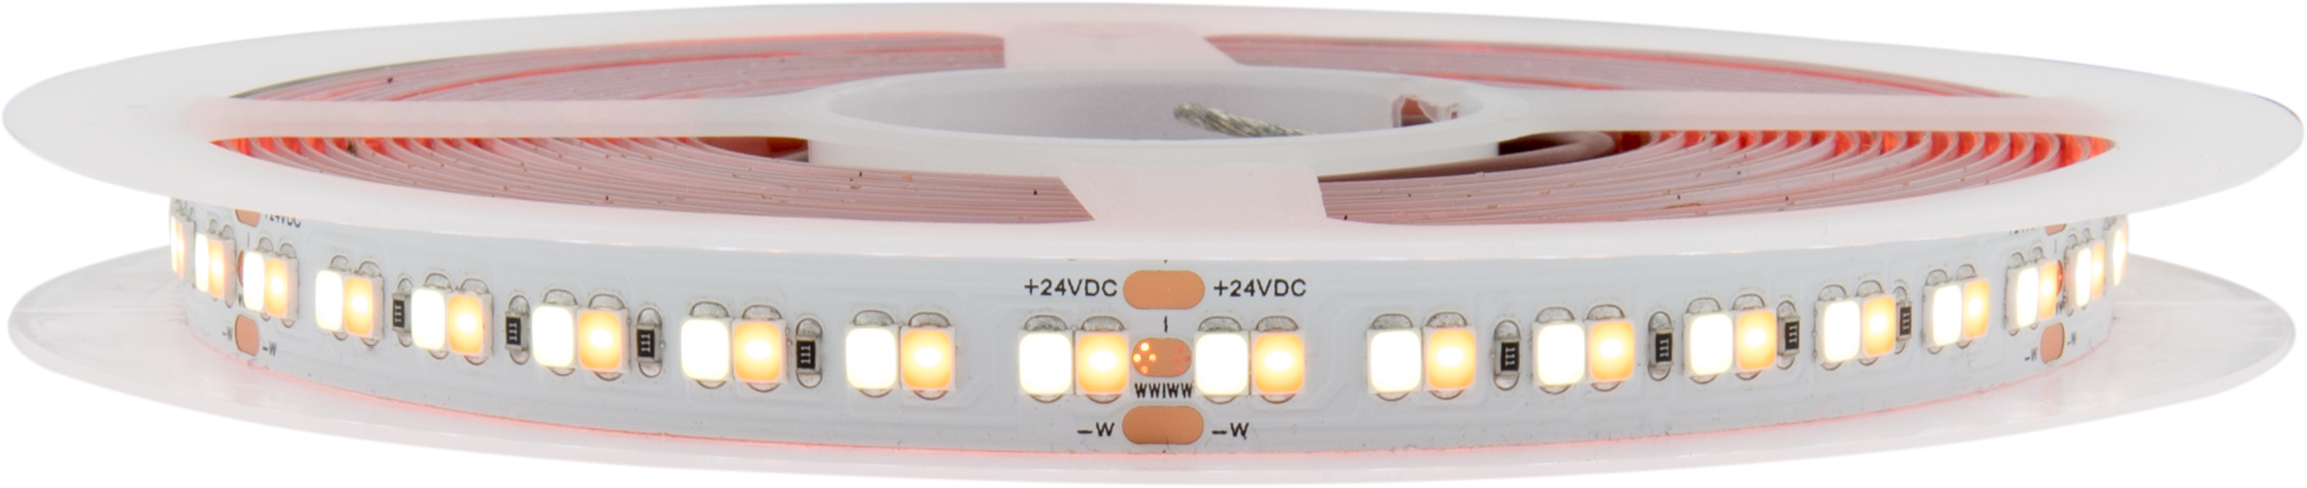 LED Flexstrip 80 ECO AW (Ambiente White) - IP20 - CRI/RA 90+